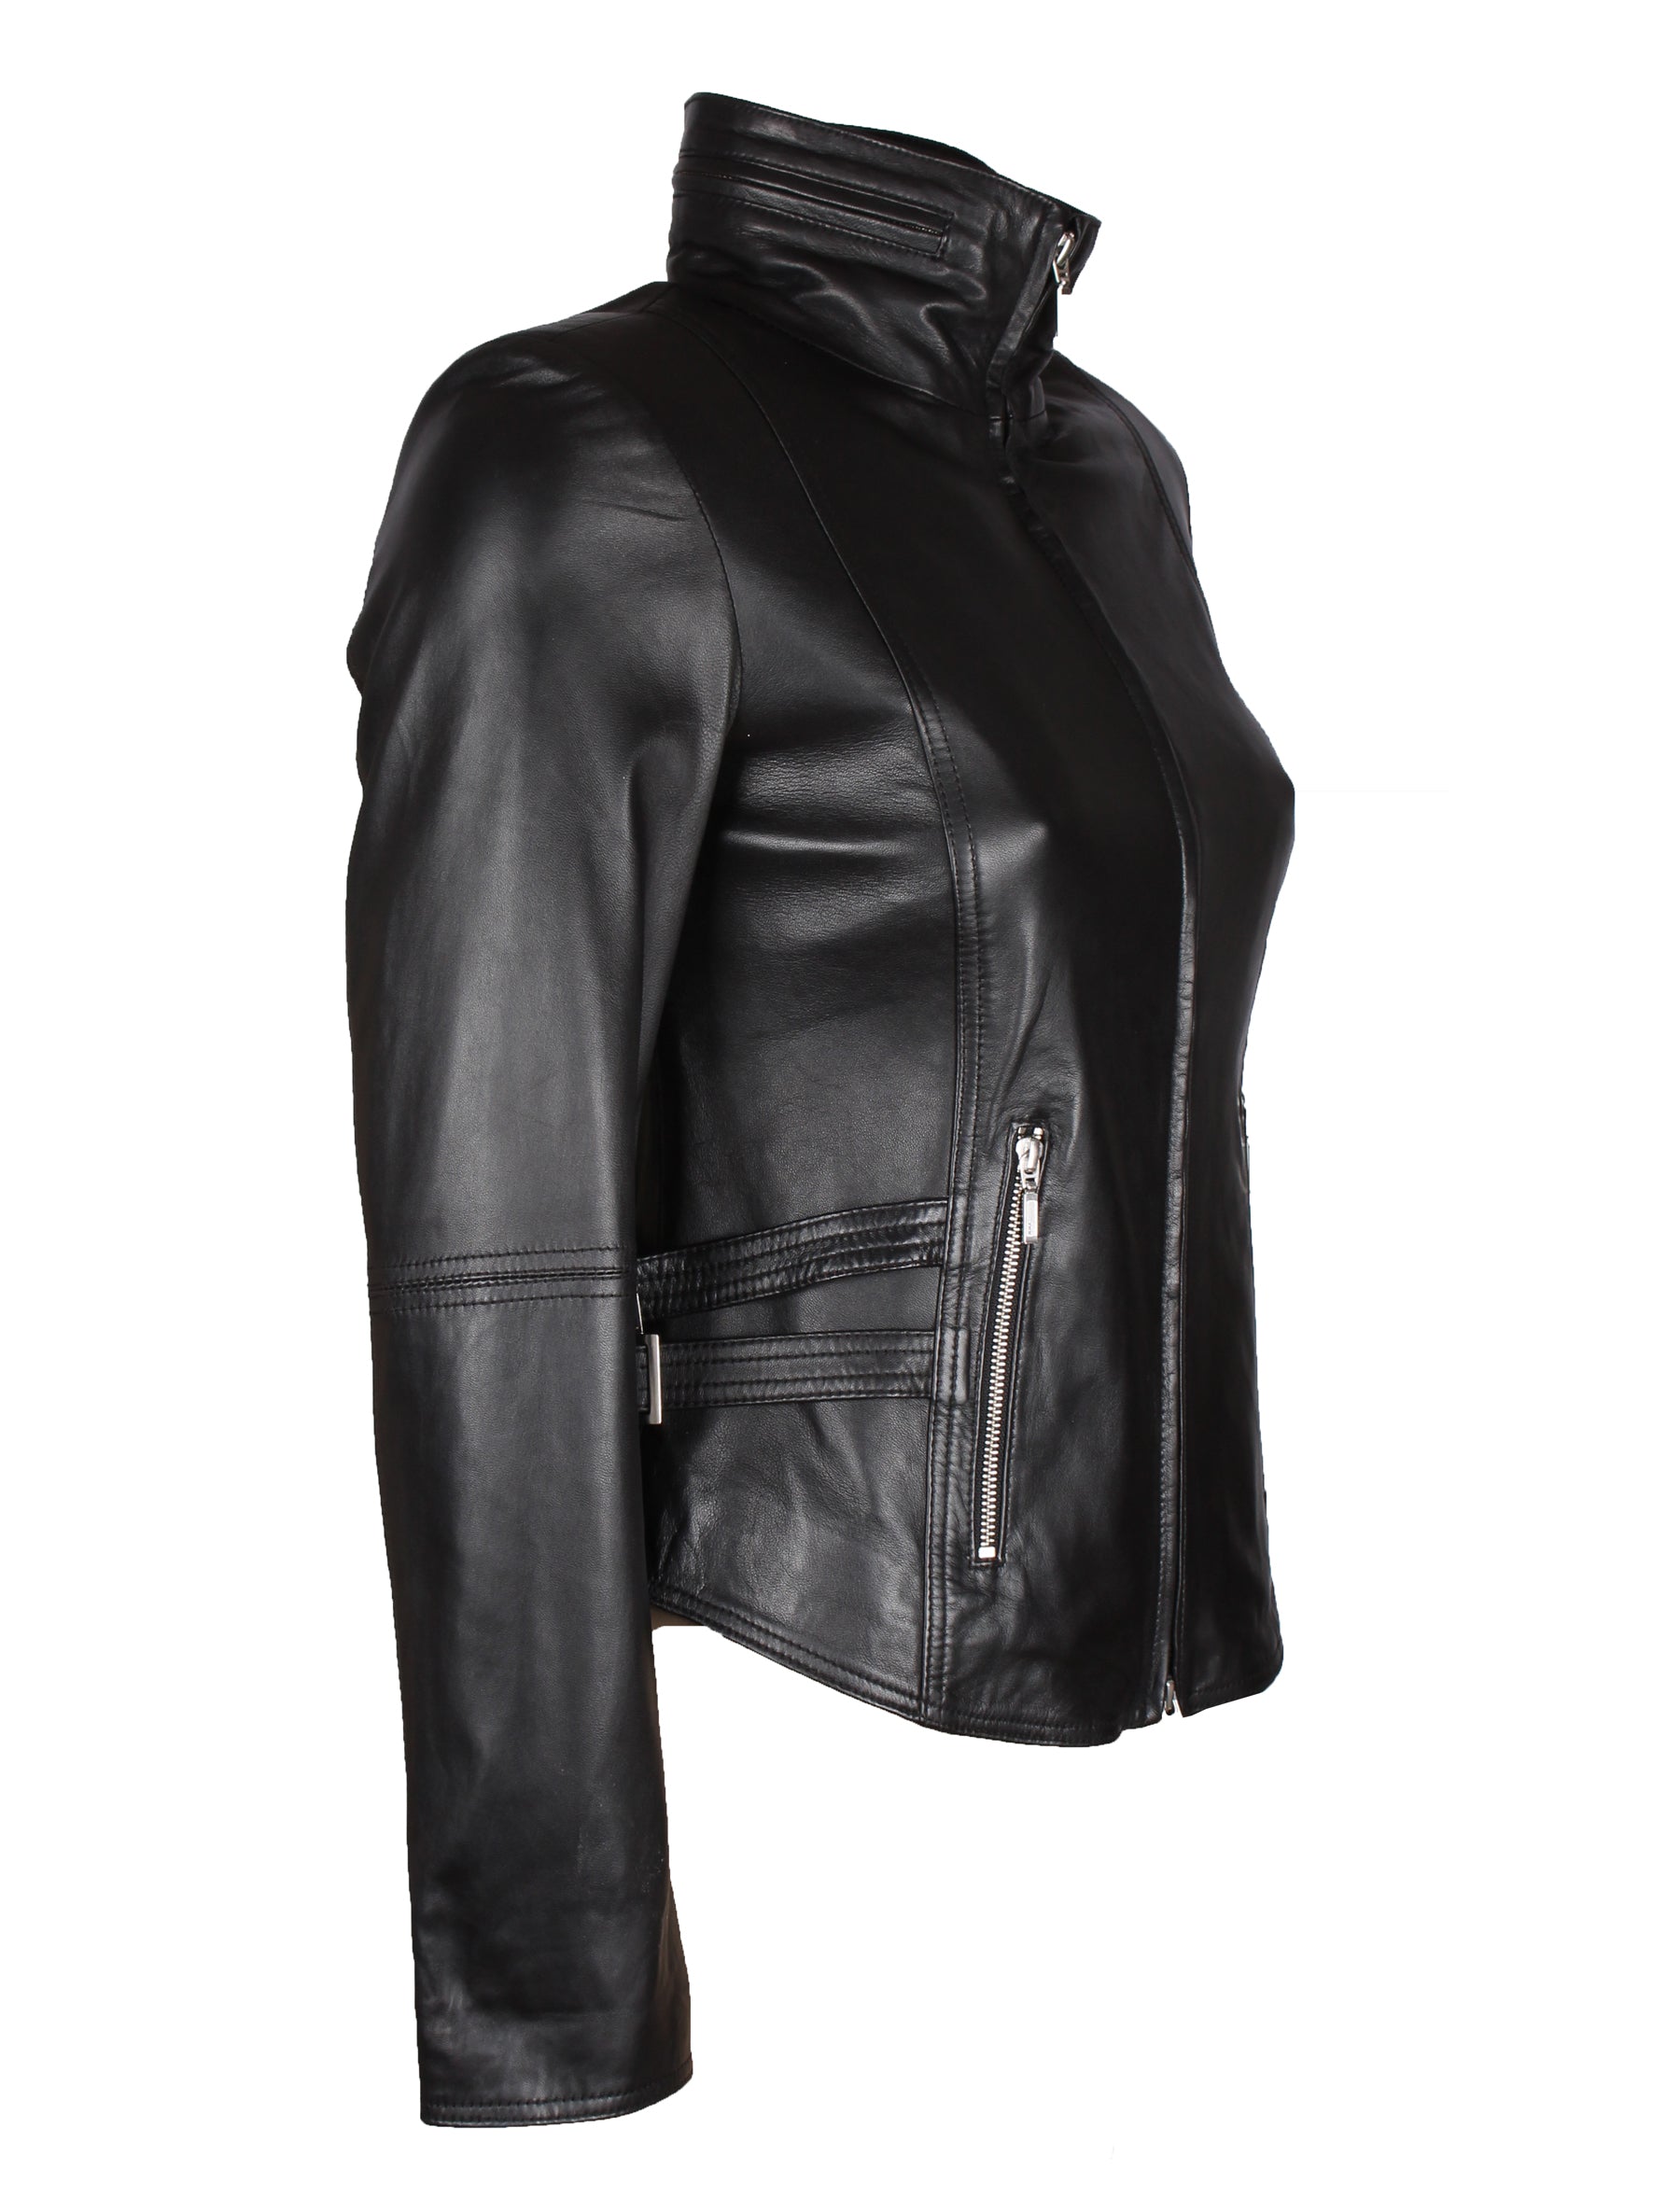 Damen Lederjacke 4873 aus Lammleder von Patago in schwarz